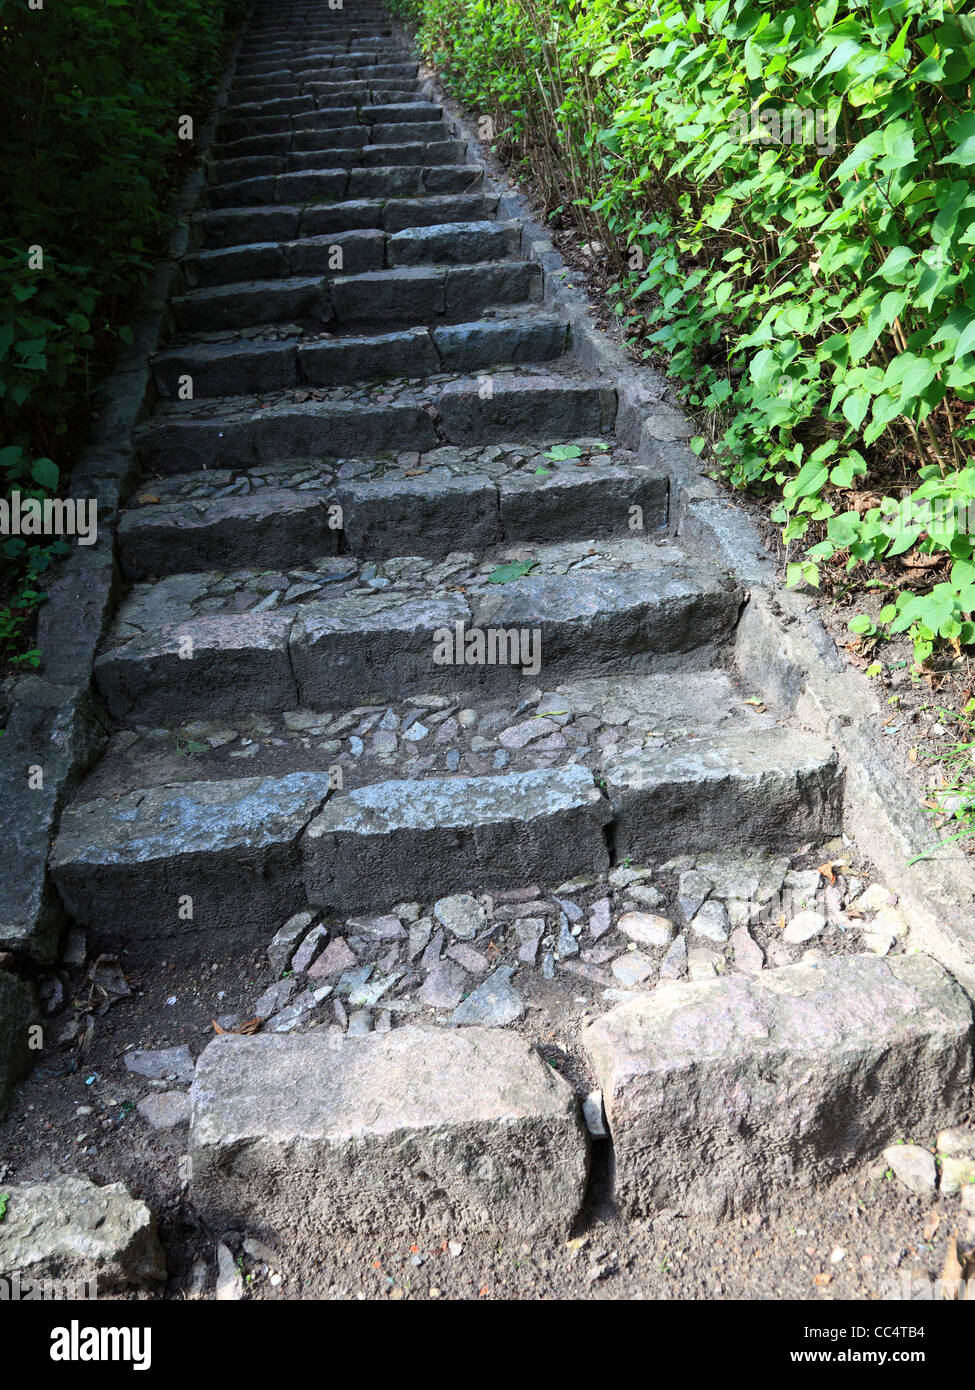 Escaliers en béton dans la jungle nature plein air Banque D'Images